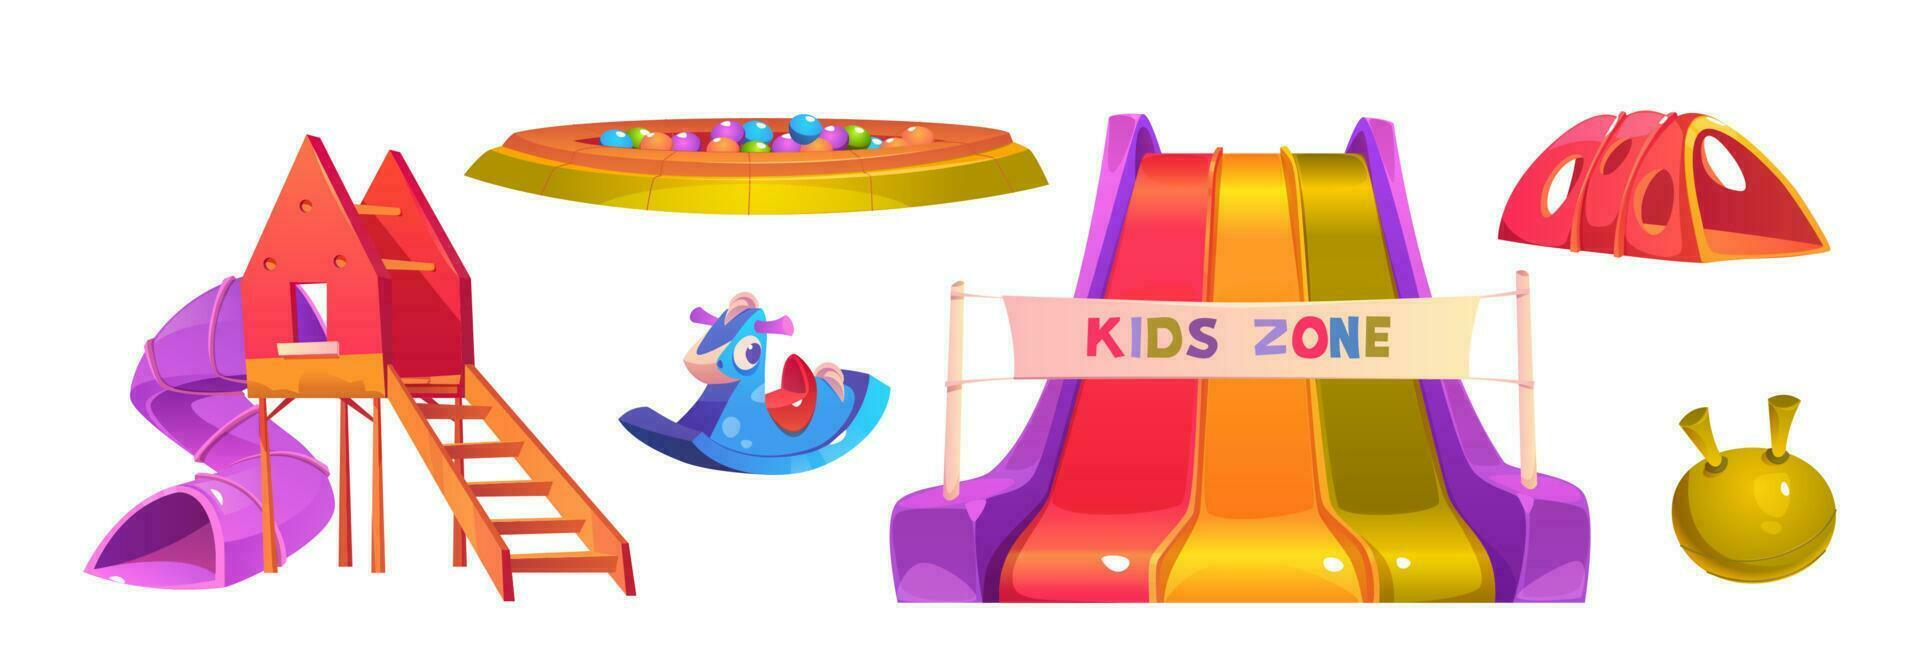 Kinder Spielplatz im Park, Kindergarten oder Schule vektor